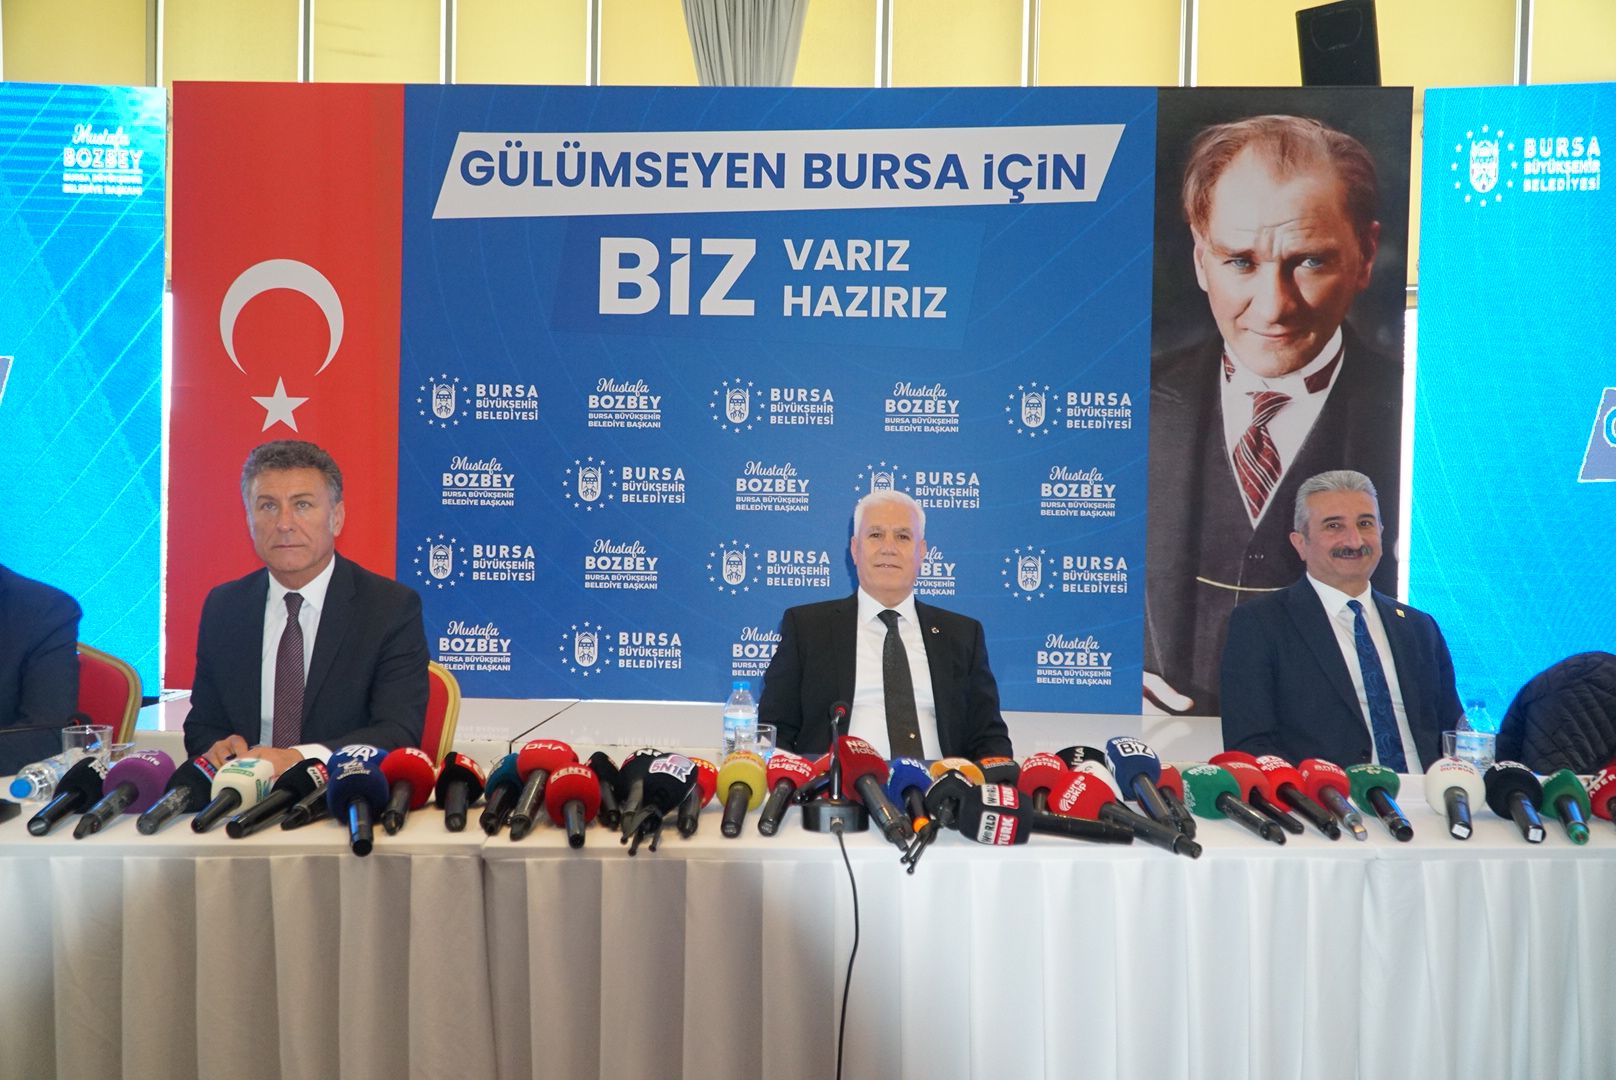 Bursa Büyükşehir Belediye Başkanı Mustafa Bozbey'den önemli açıklamalar